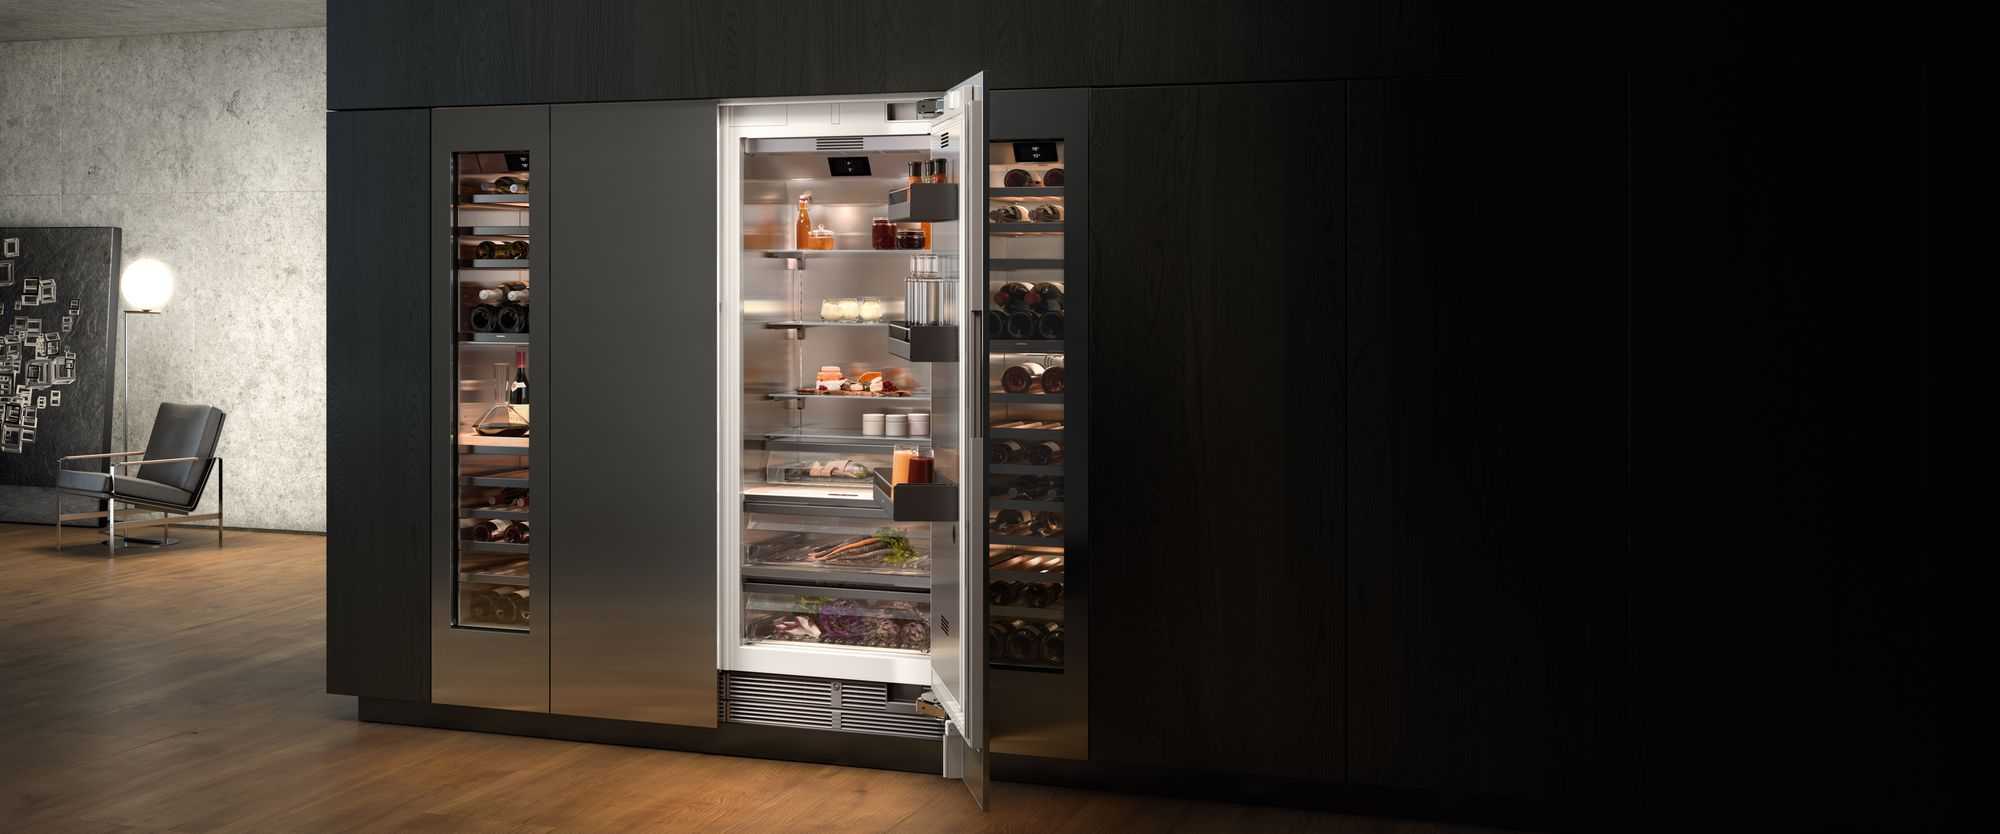 Gaggenau Refrigerators by FCI London